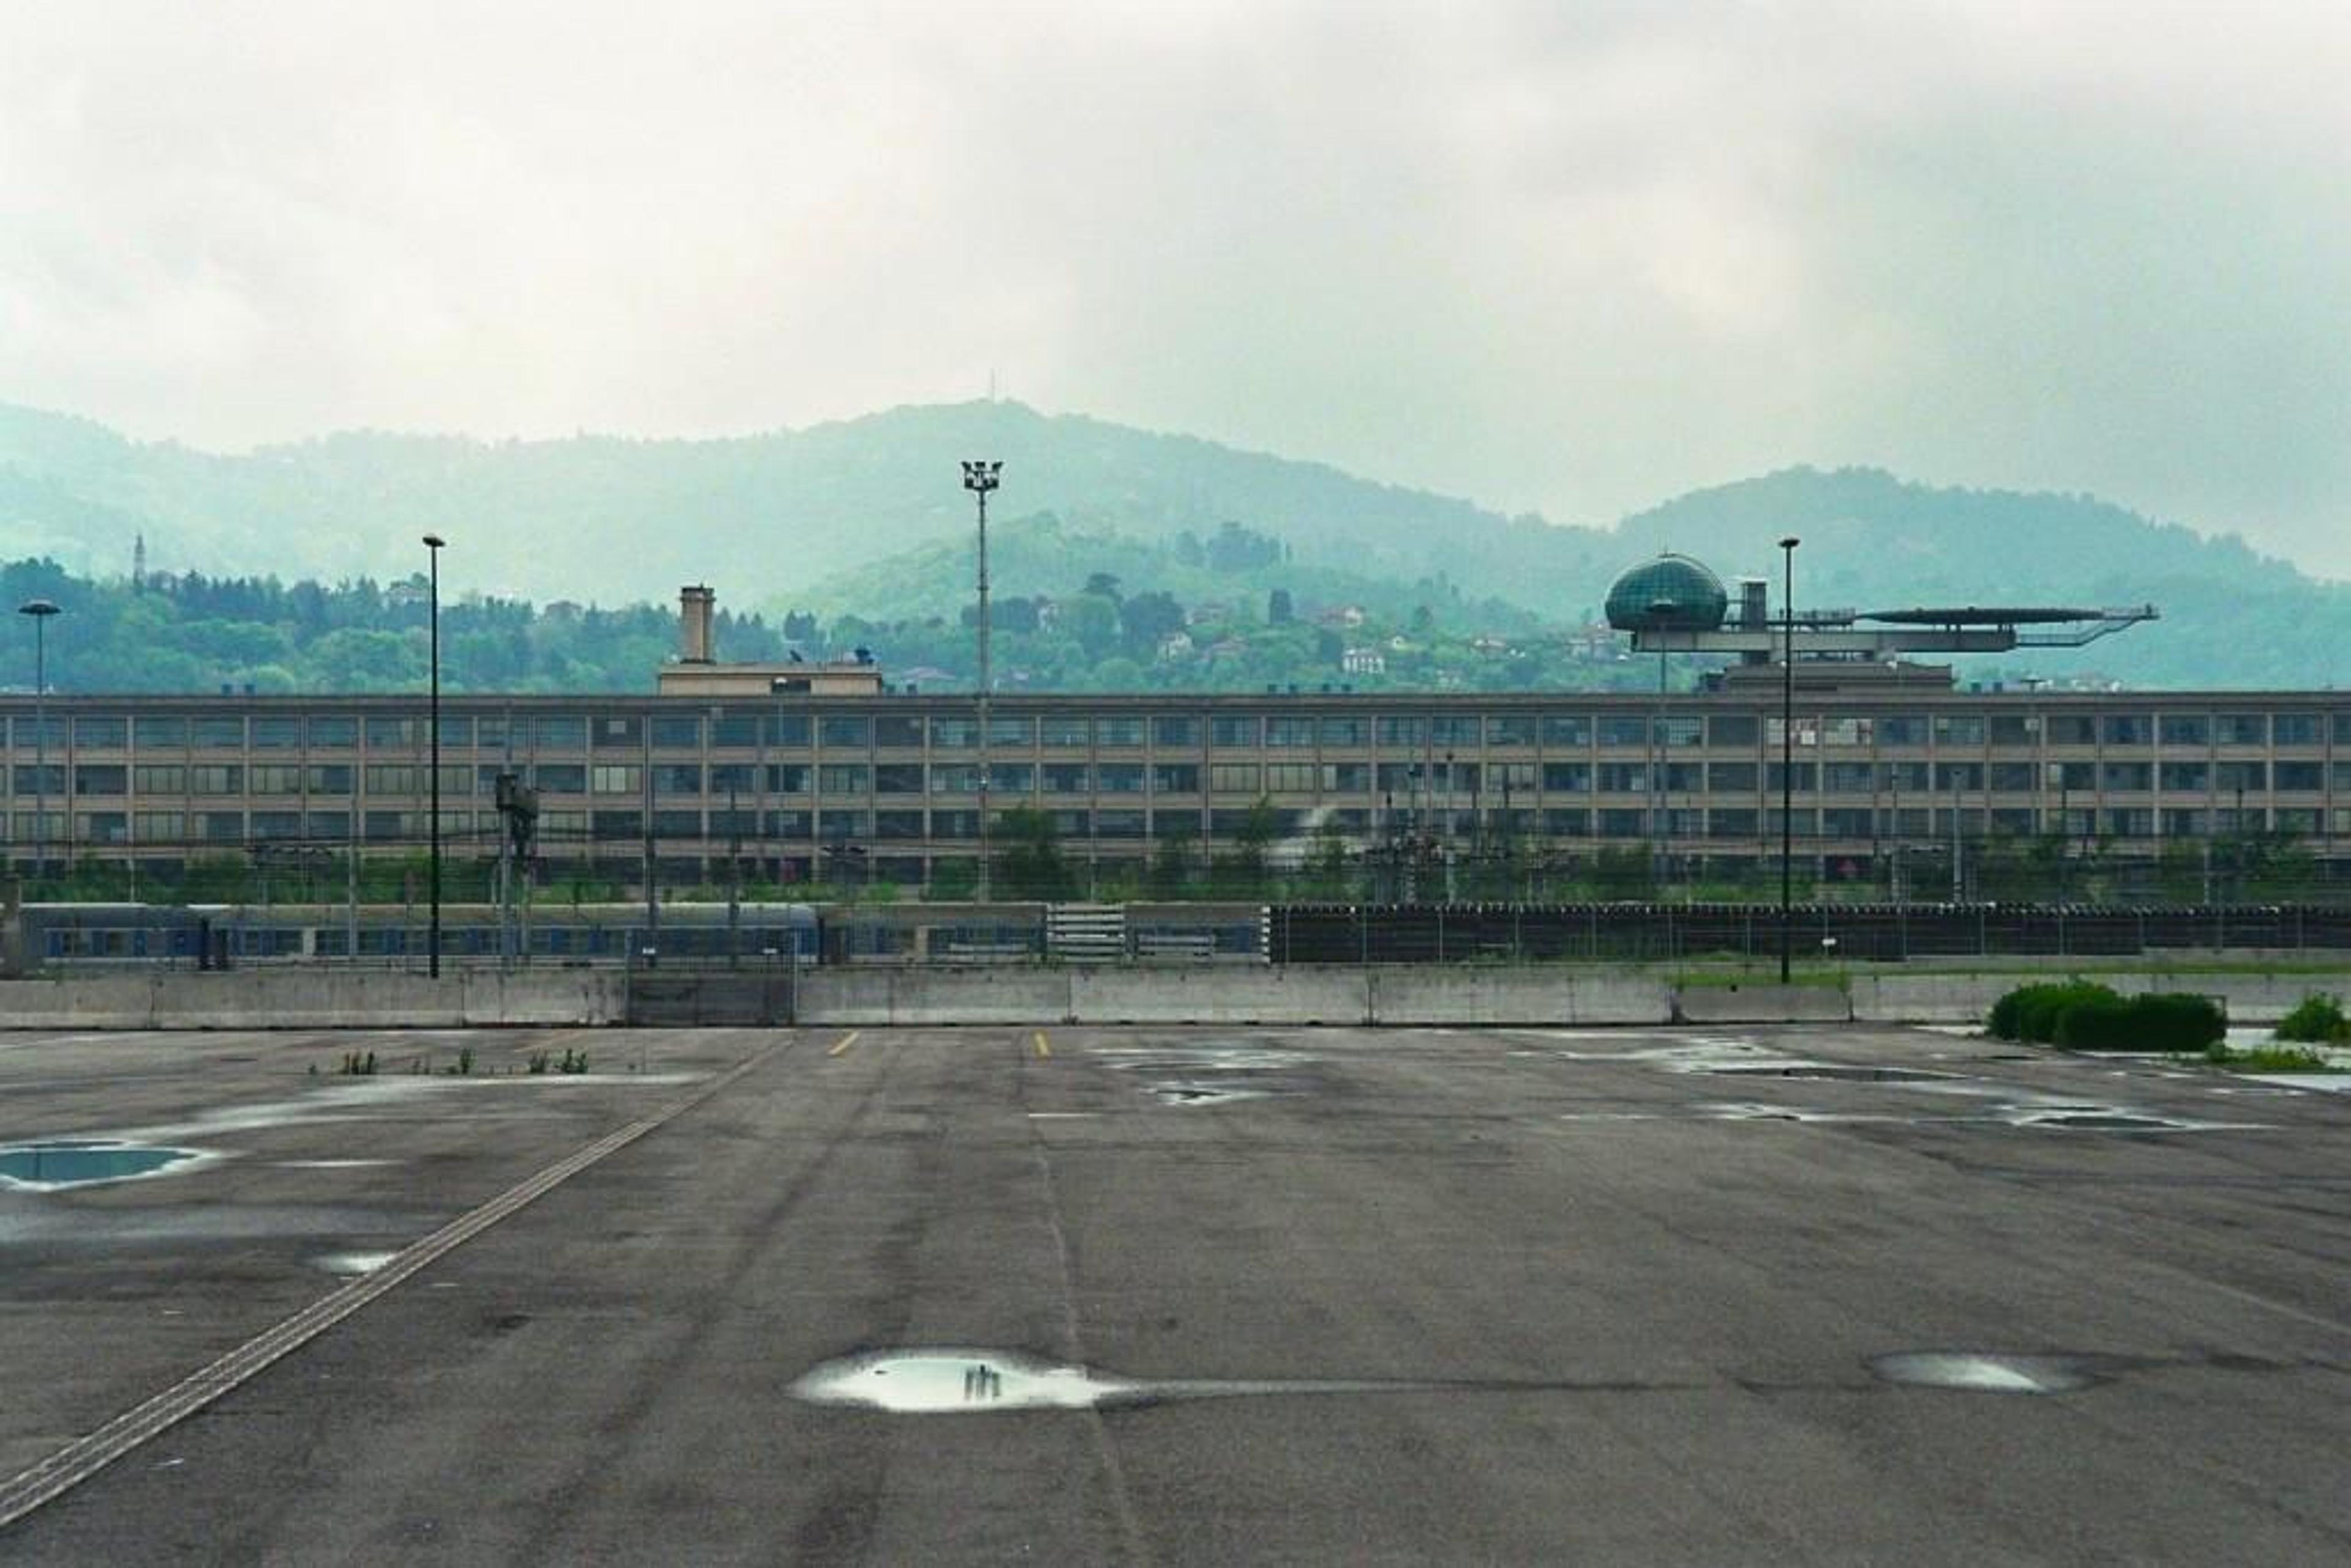 Fiat complex in Lingotto